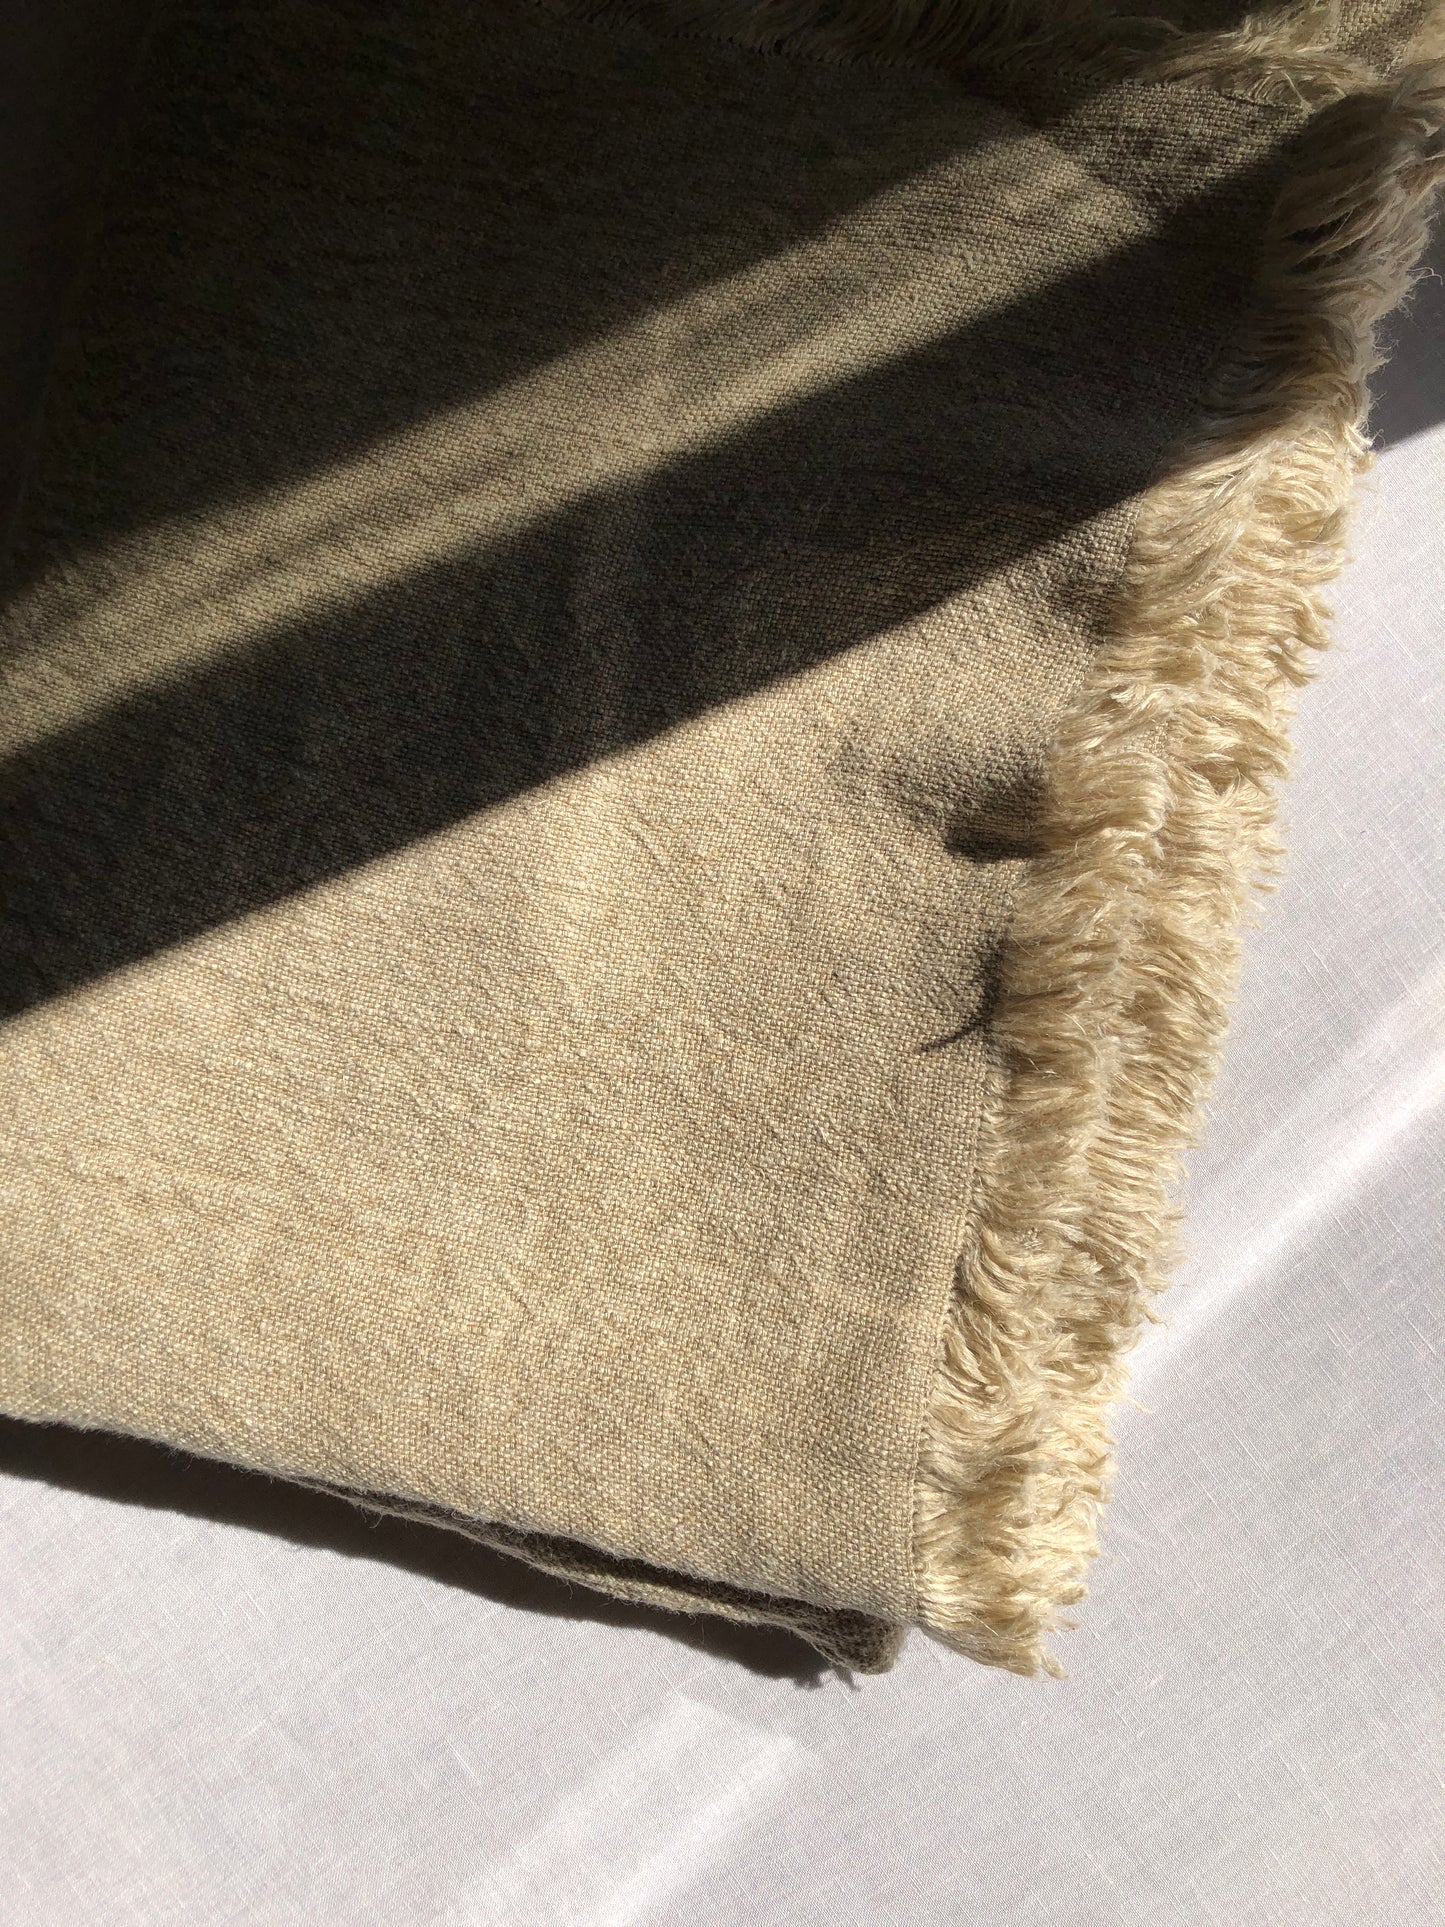 V.VM Linen Tablecloth - Fringe